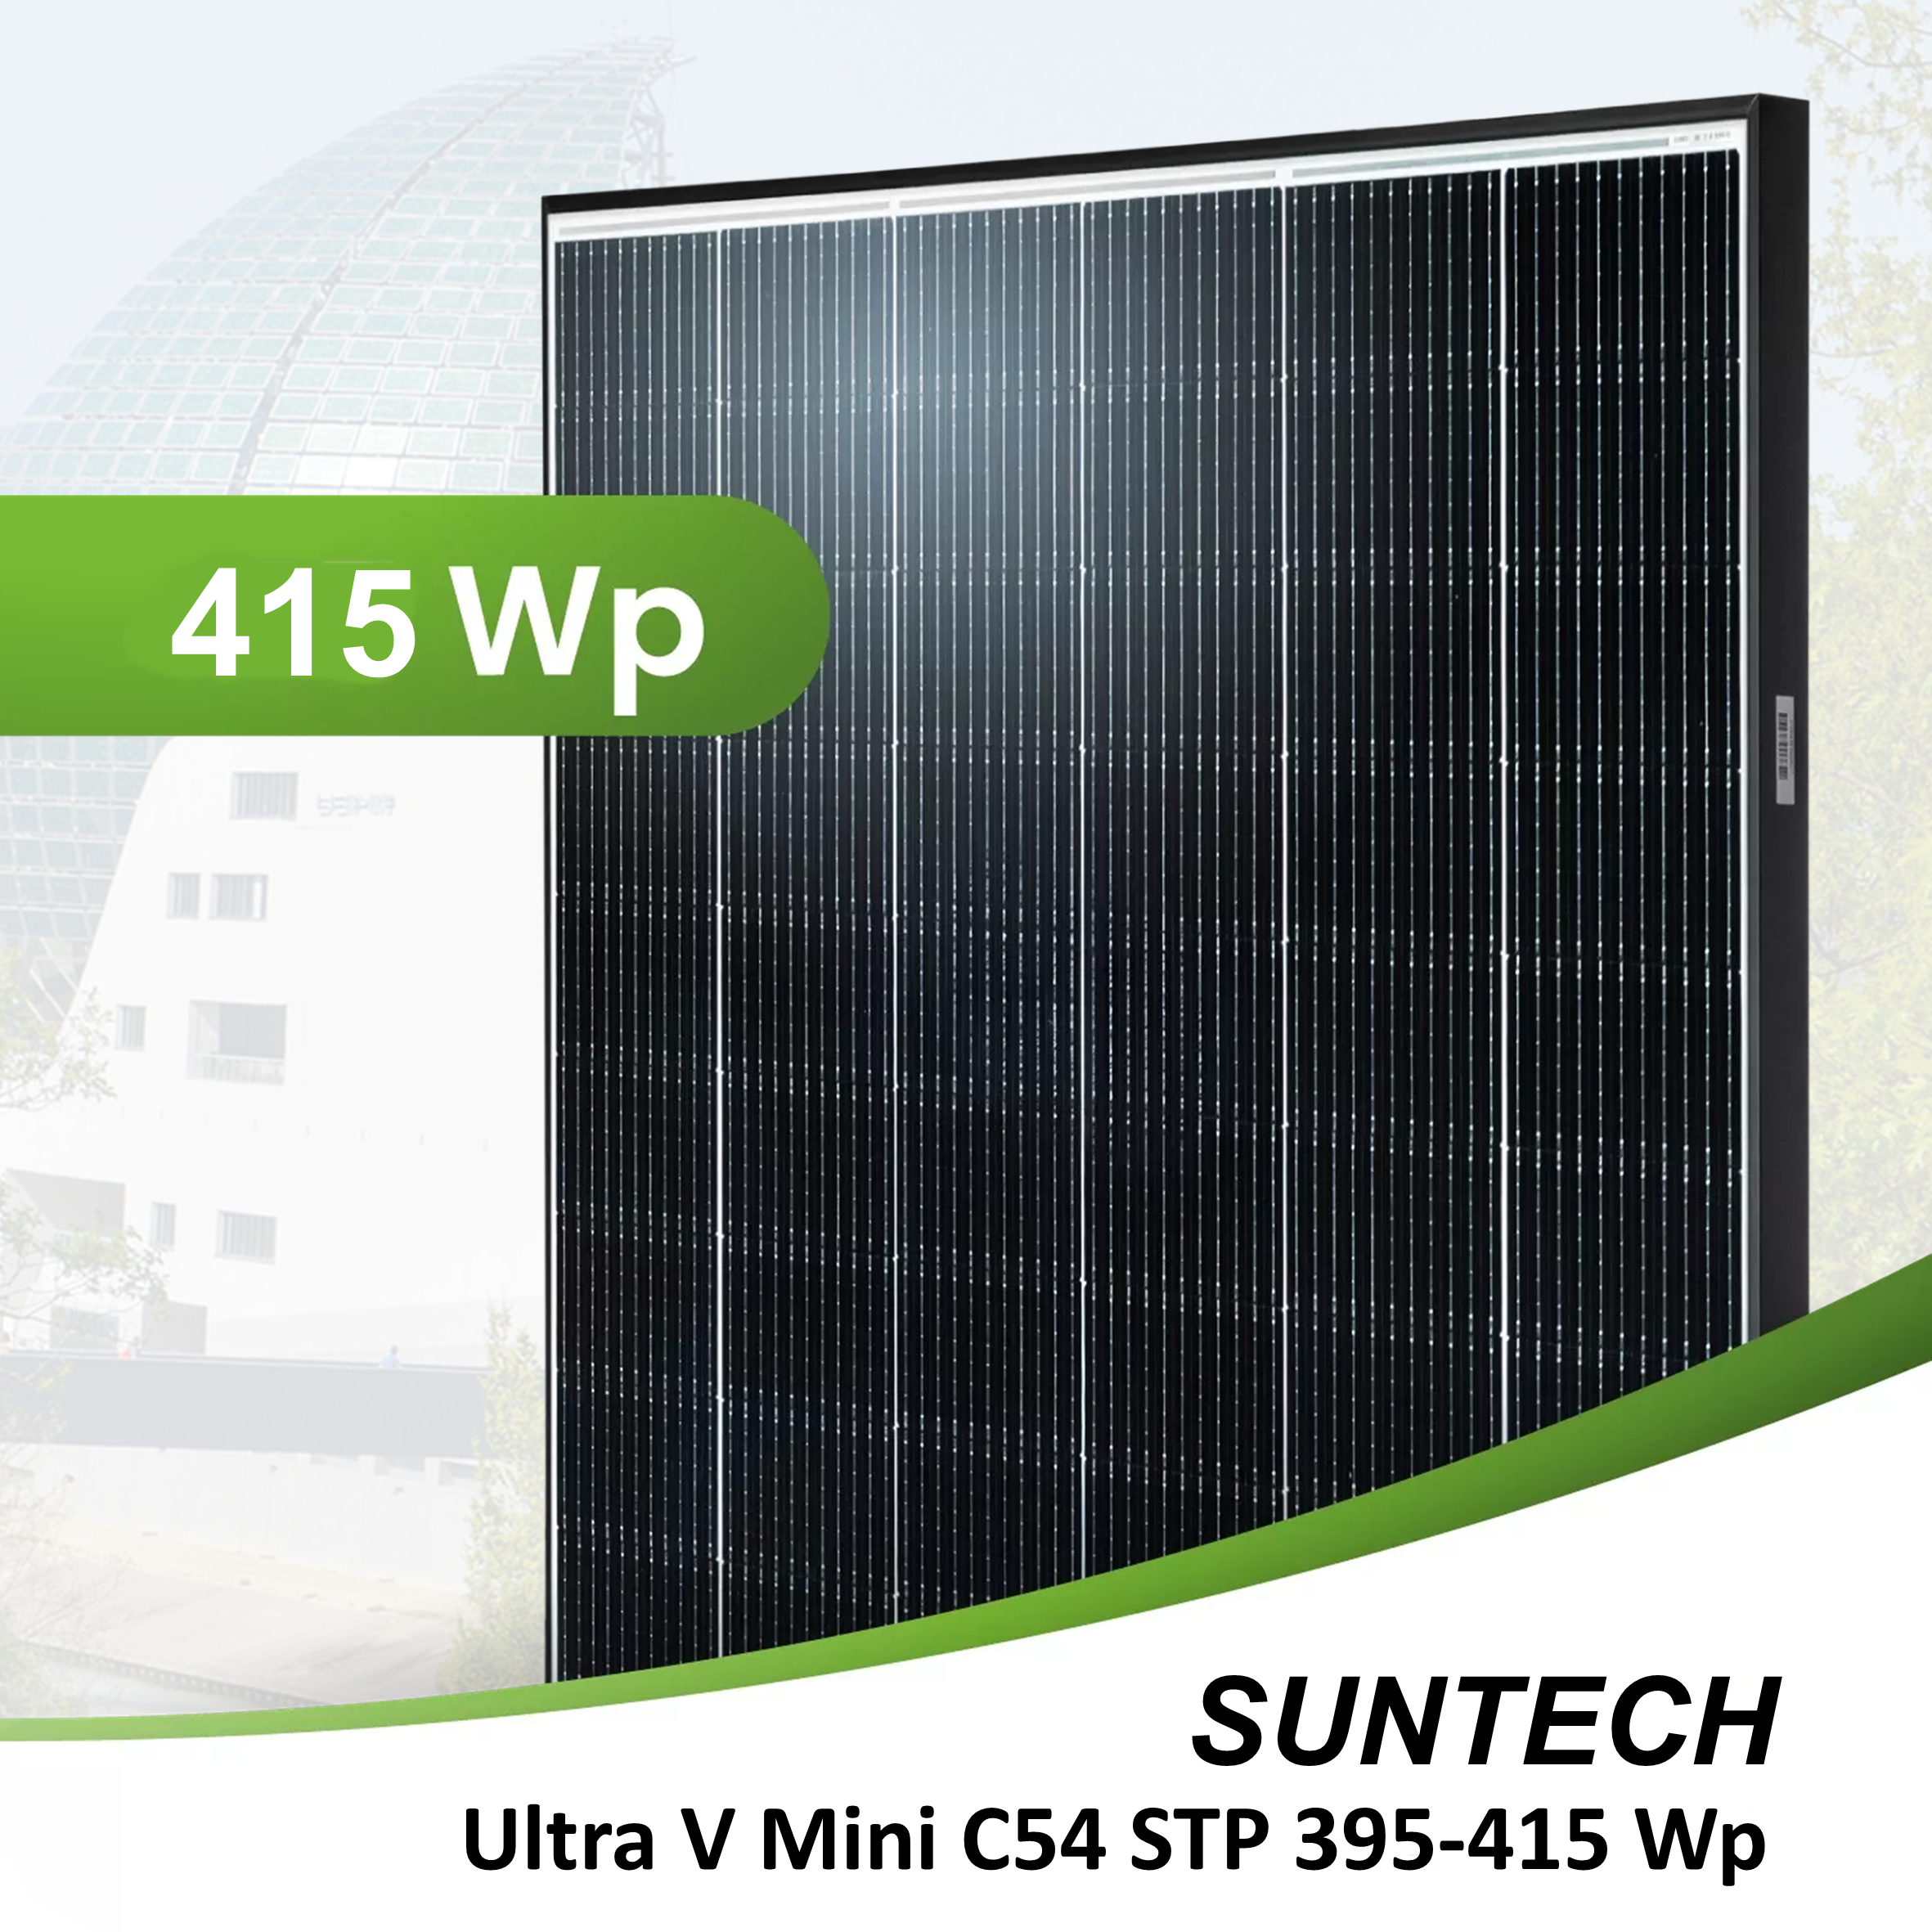 SUNTECH 415 Wp Ultra V Mini STP 415 S - C54 Black